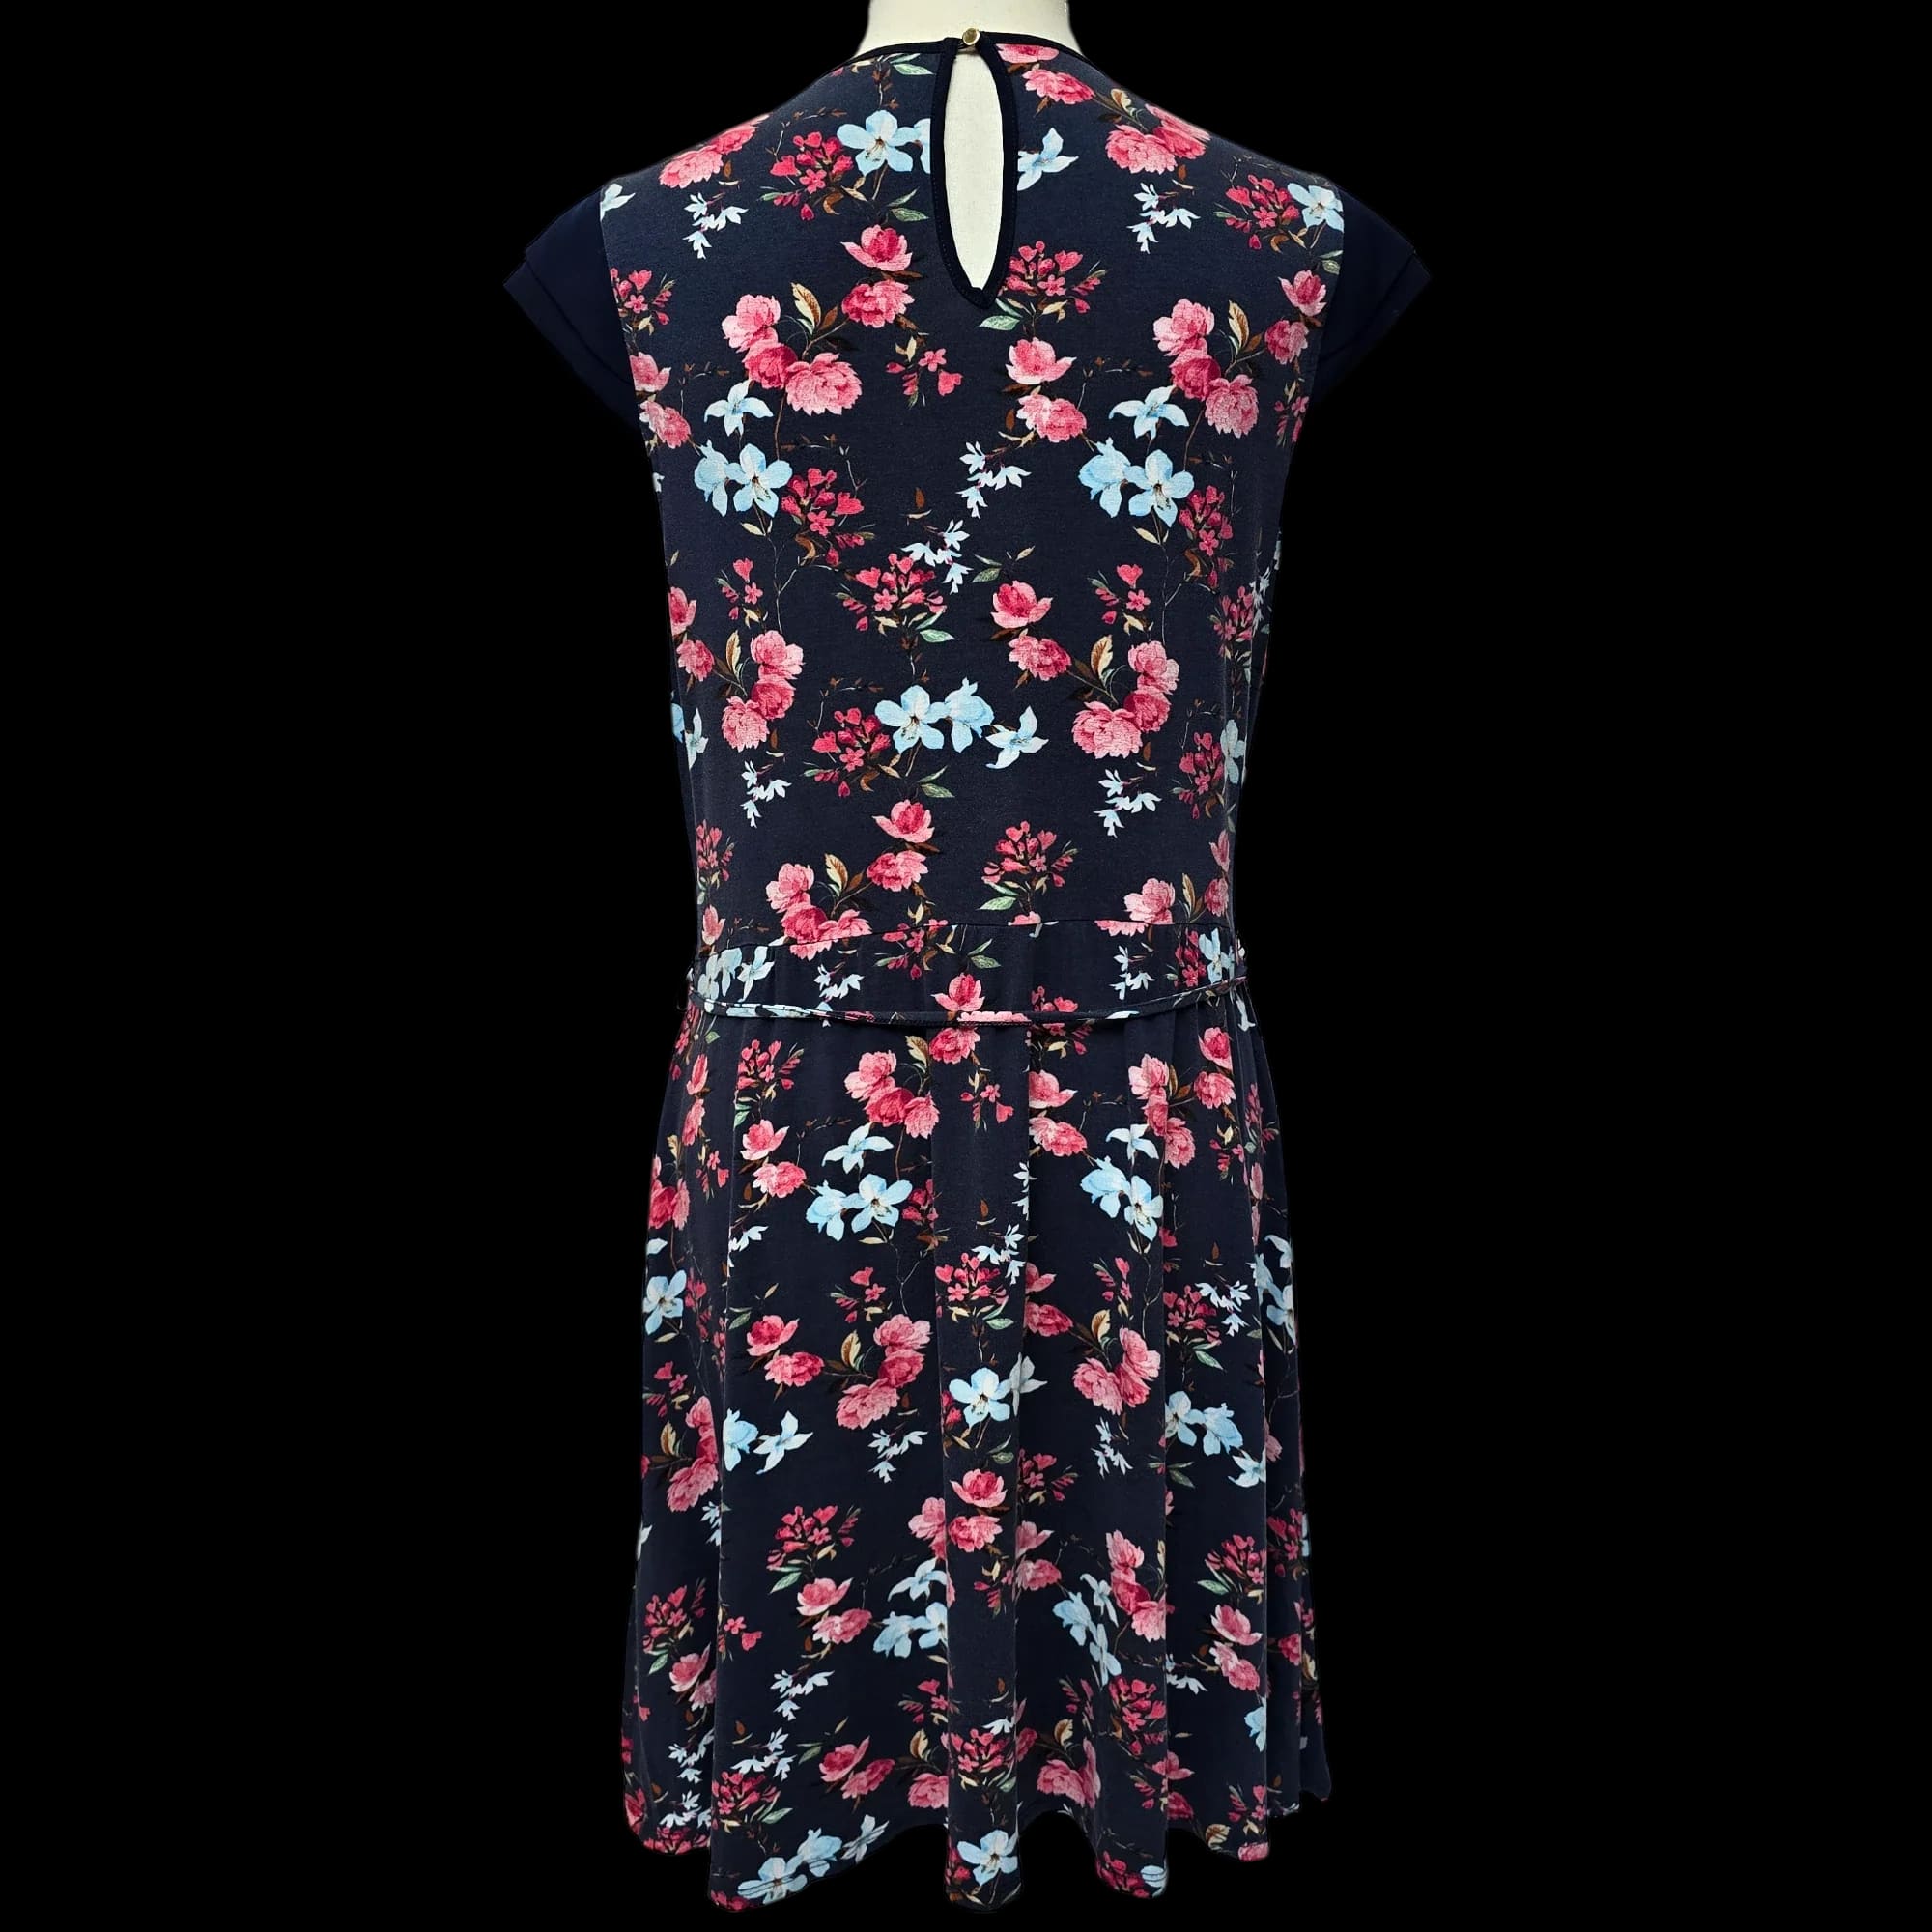 Women’s Oasis Floral Shift Dress UK Large - Dresses - 2